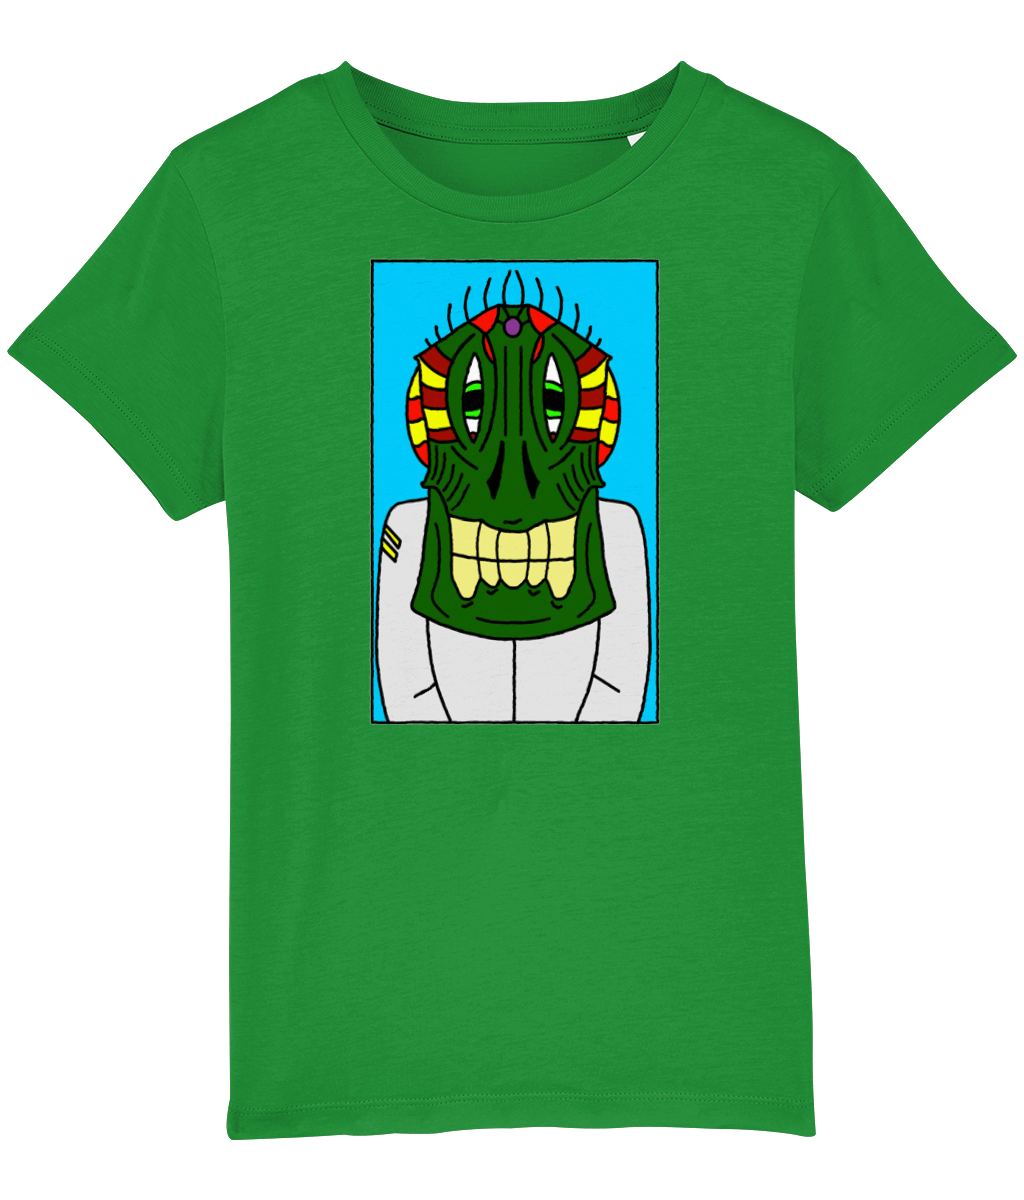 Kids Space Beast T-Shirt